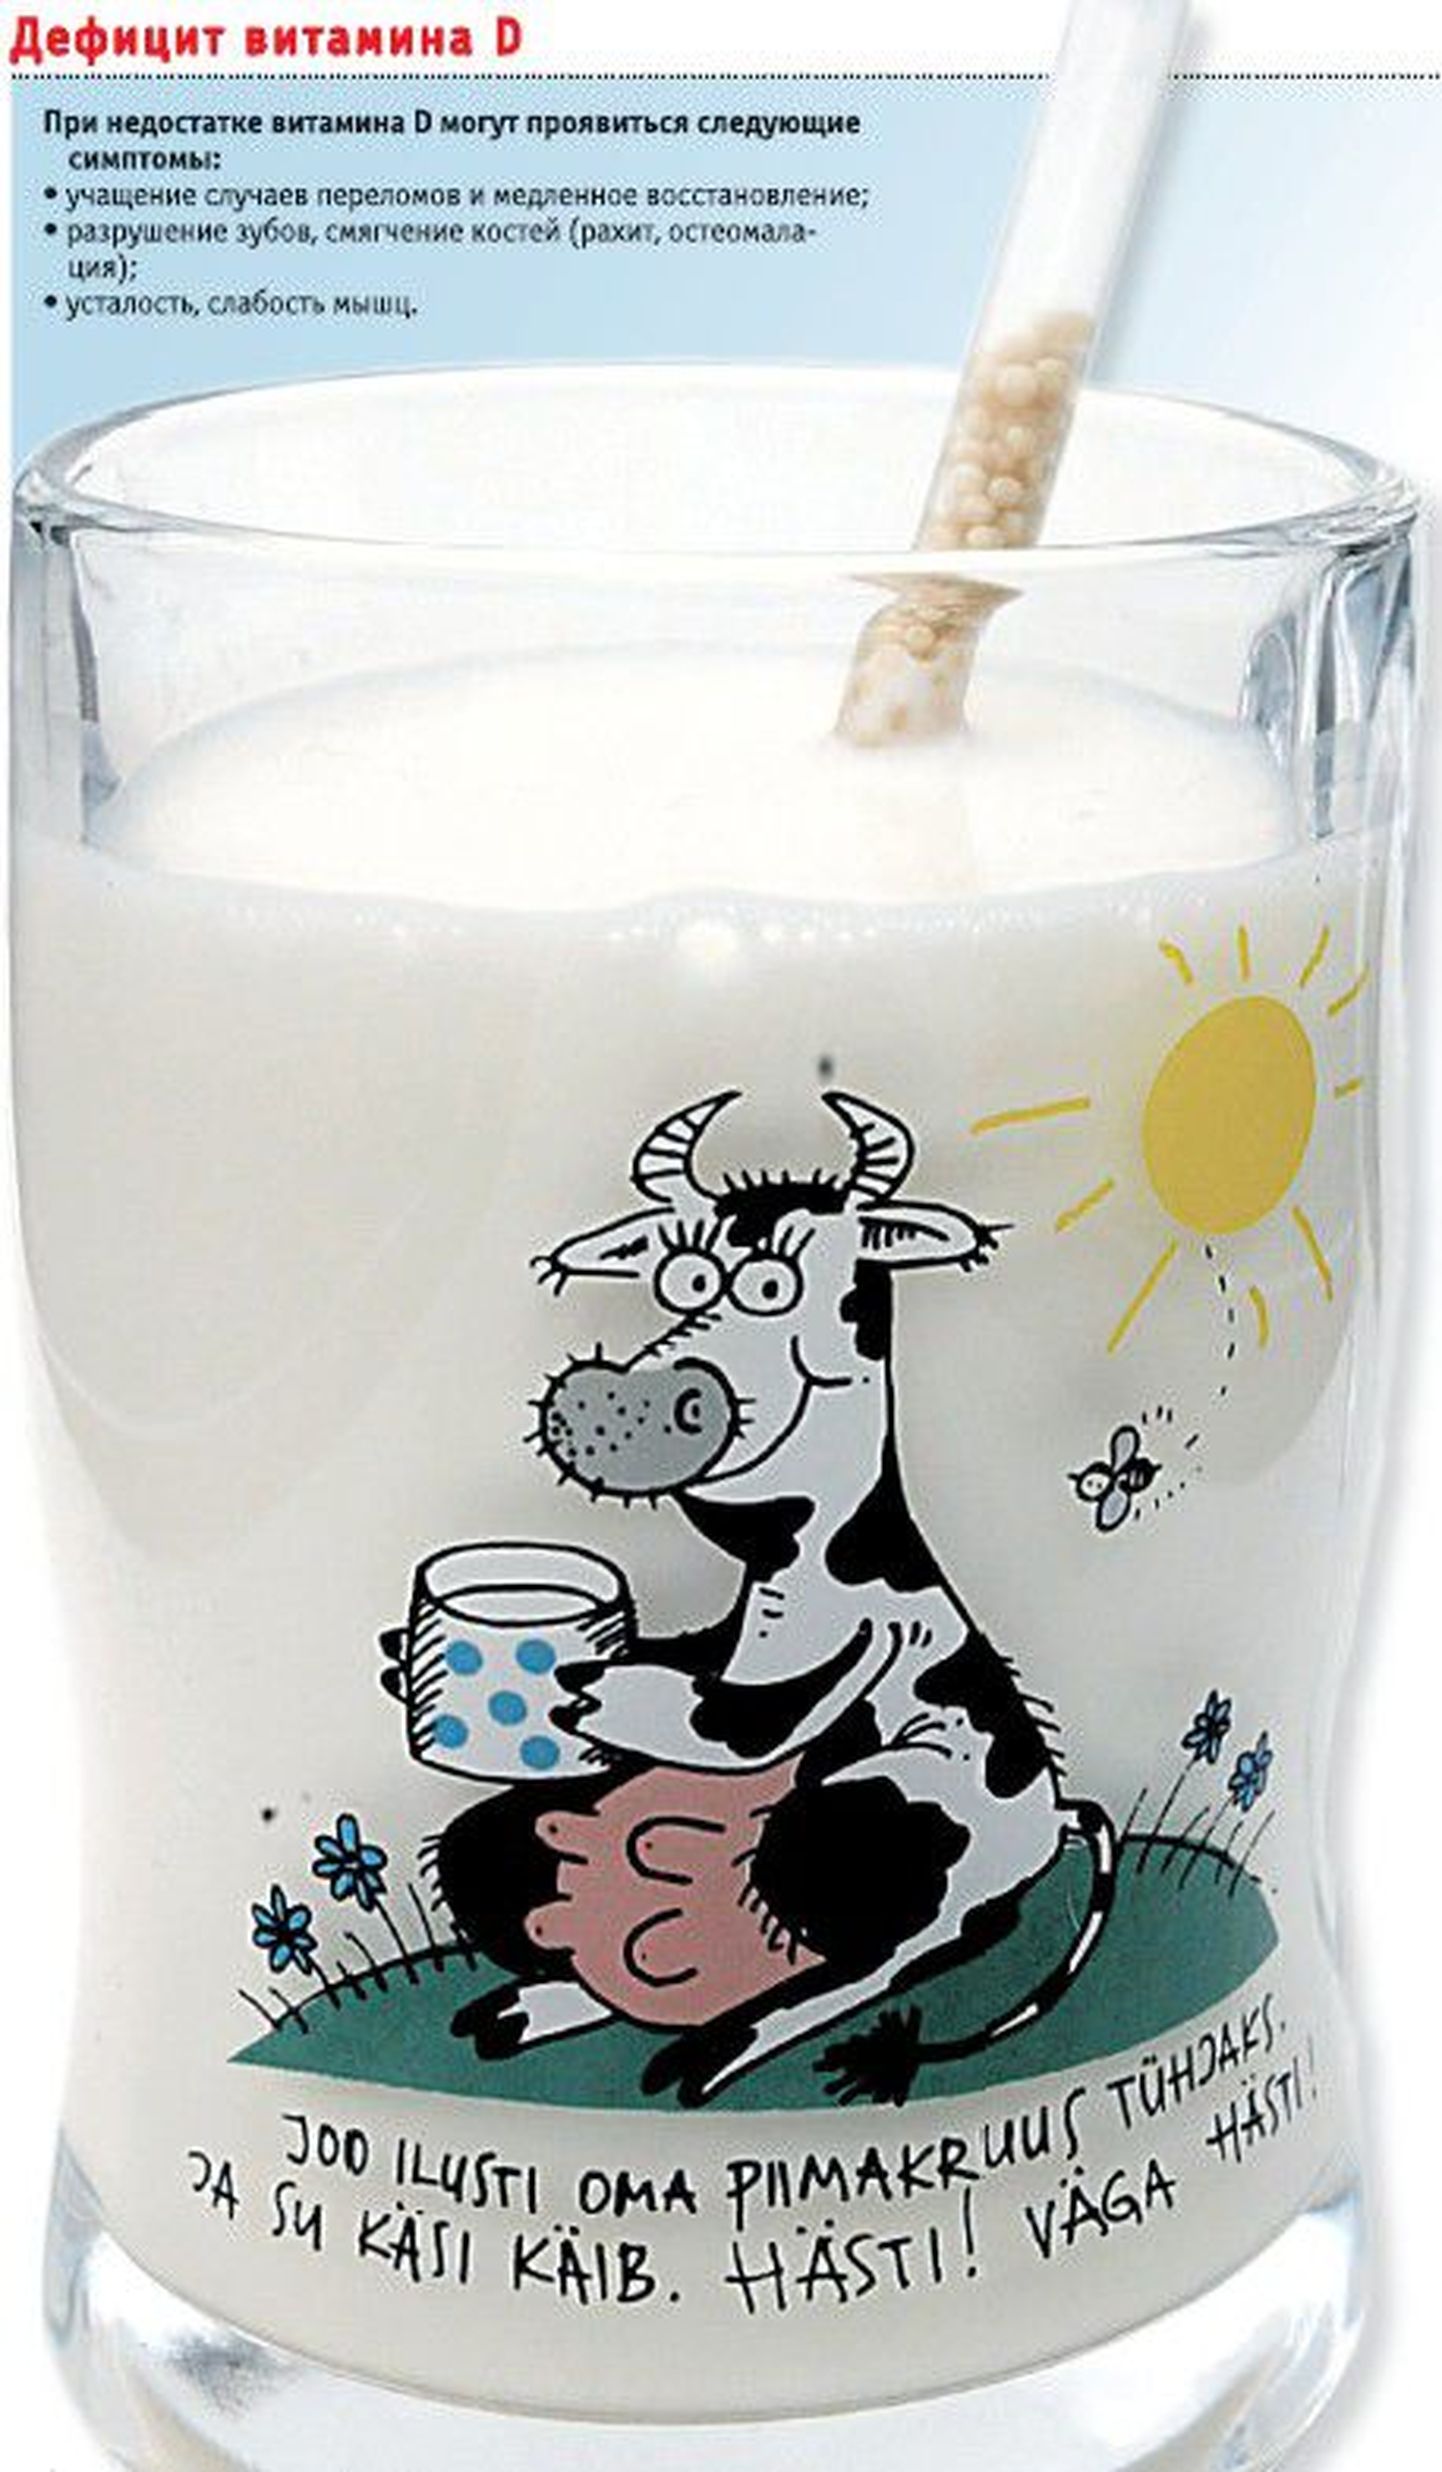 Врачи рекомендуют пить молоко, обо­гащенное витамином D. Веселая надпись на кружке: «Выпей кружку молока до дна. И дела у тебя пойдут хорошо. Хорошо! Очень хорошо!»